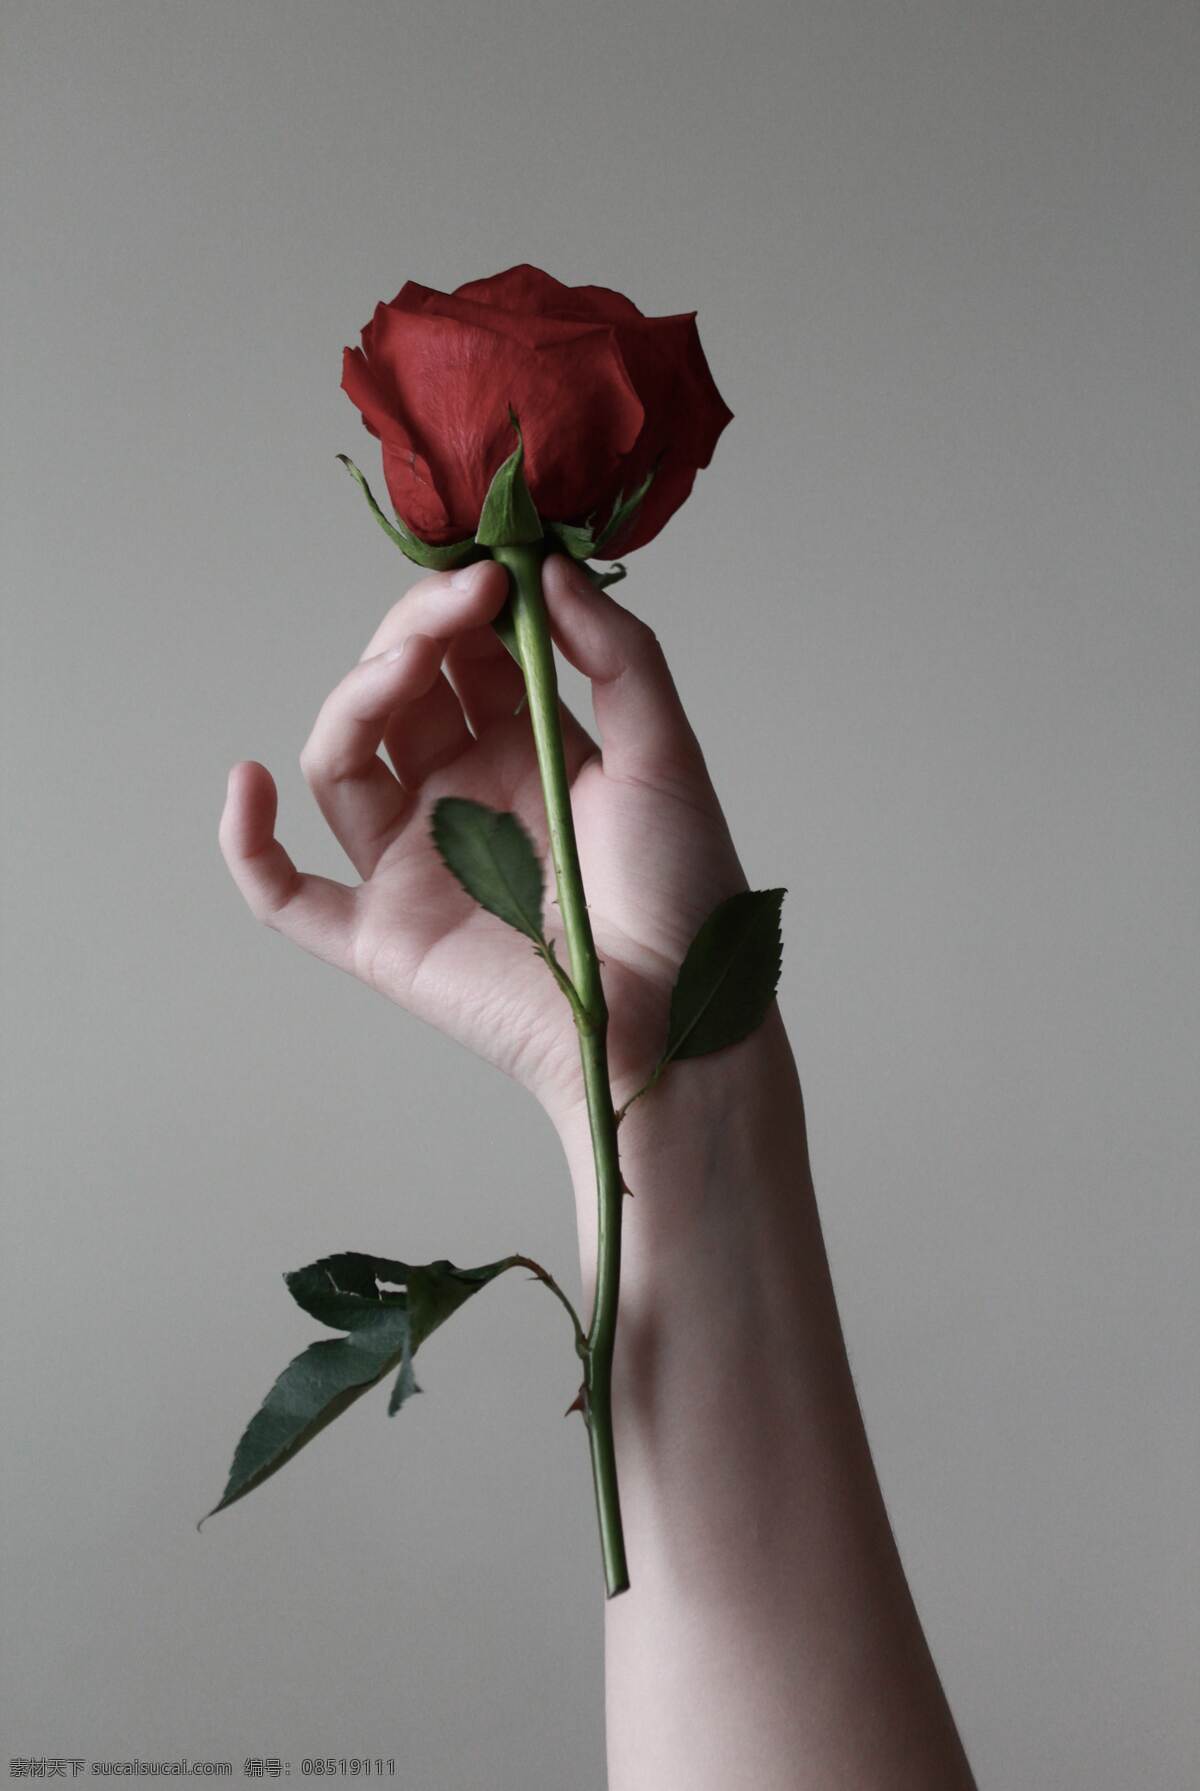 赠人玫瑰 手有余香图片 高清 玫瑰 手 优雅 气质 一朵玫瑰 高贵 人物图库 日常生活